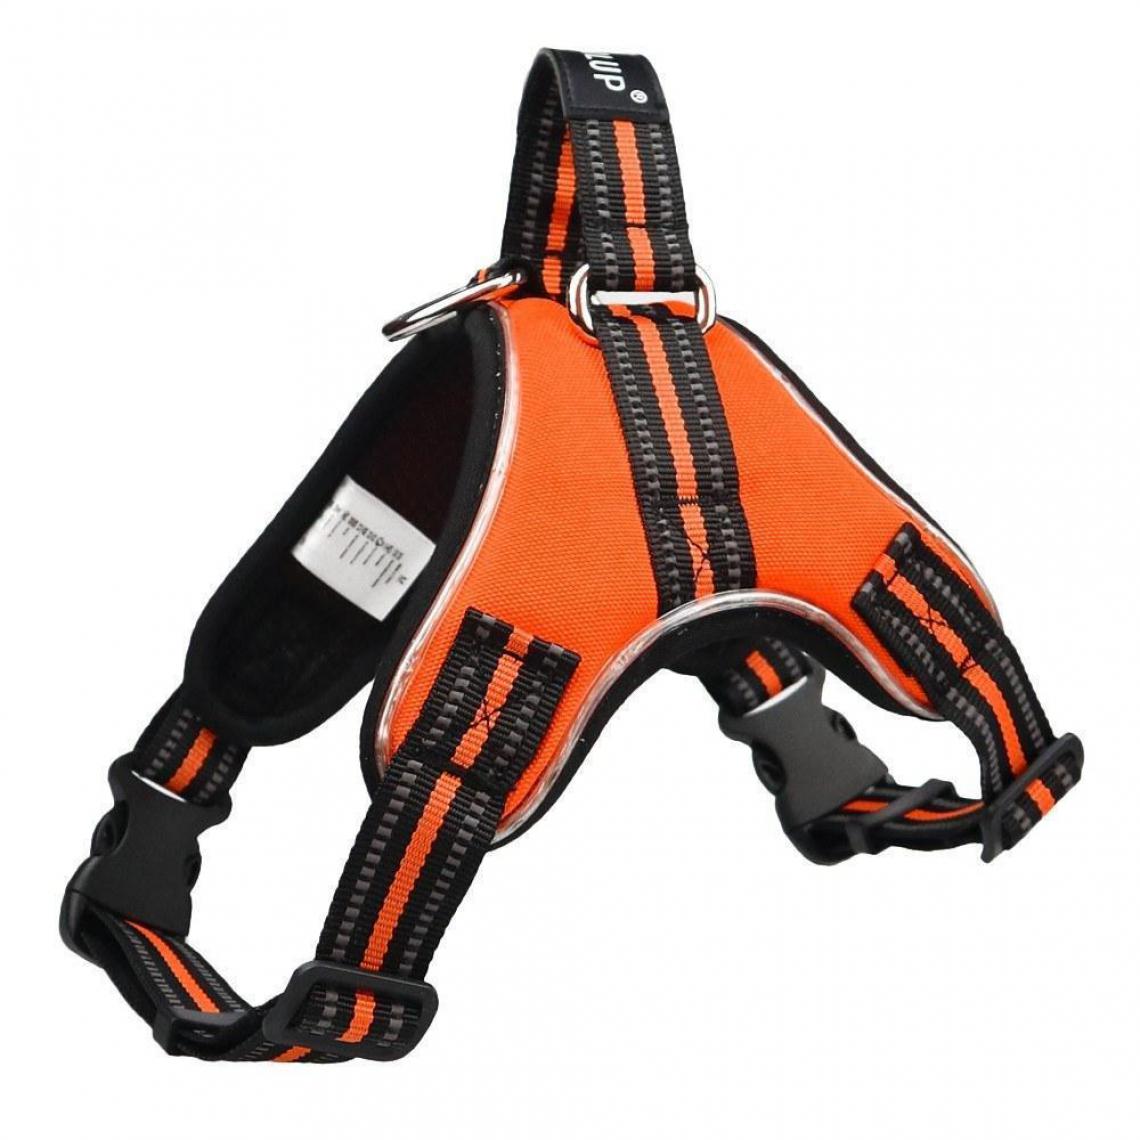 Justgreenbox - Gilet réfléchissant pour chien avec harnais pour chien, gilet de sécurité en tissu maillé respirant, Orange, S - Equipement de transport pour chien